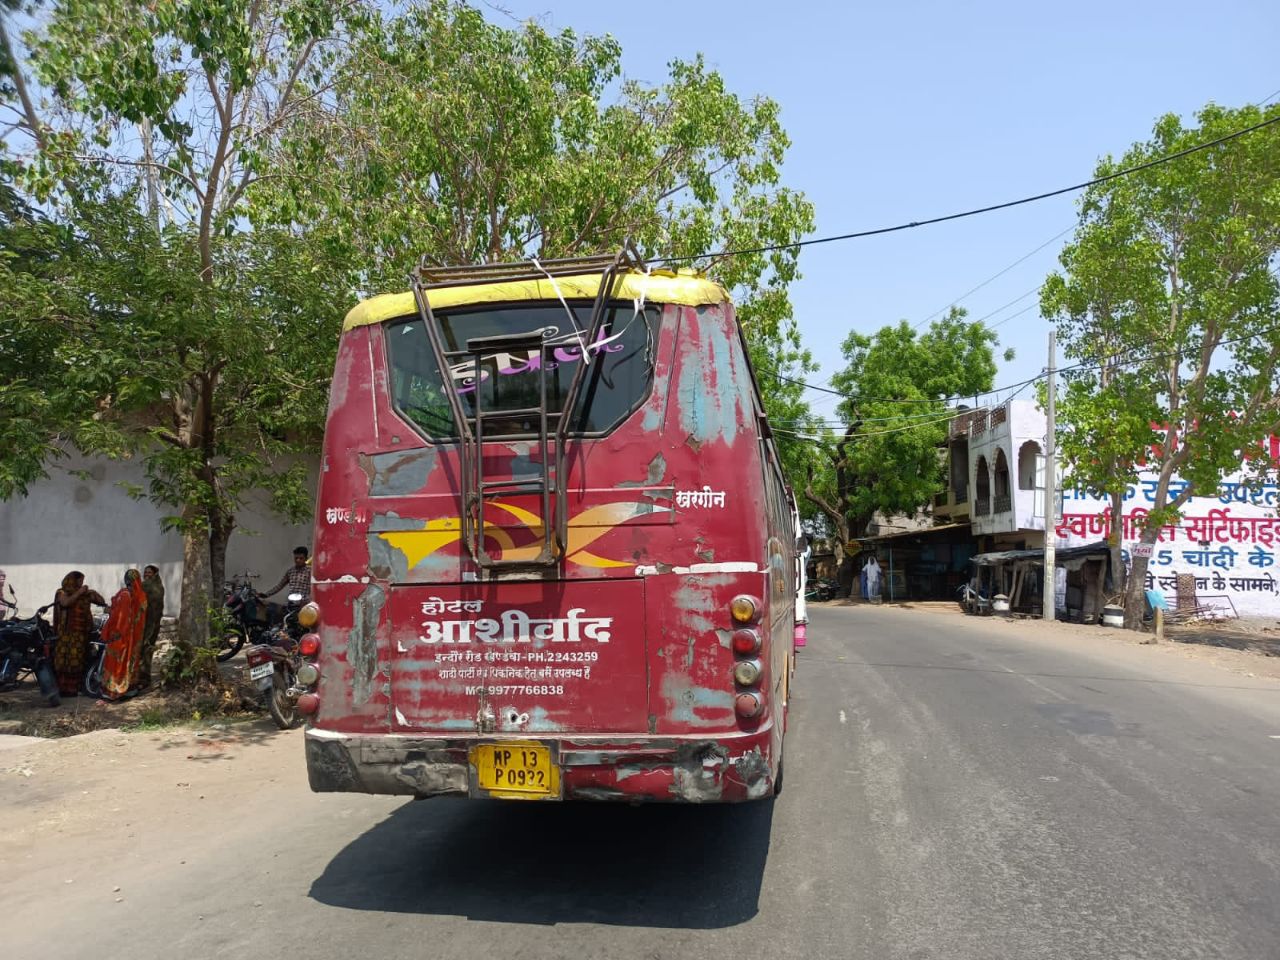 Magazine Impact: Khatara buses carrying fitness